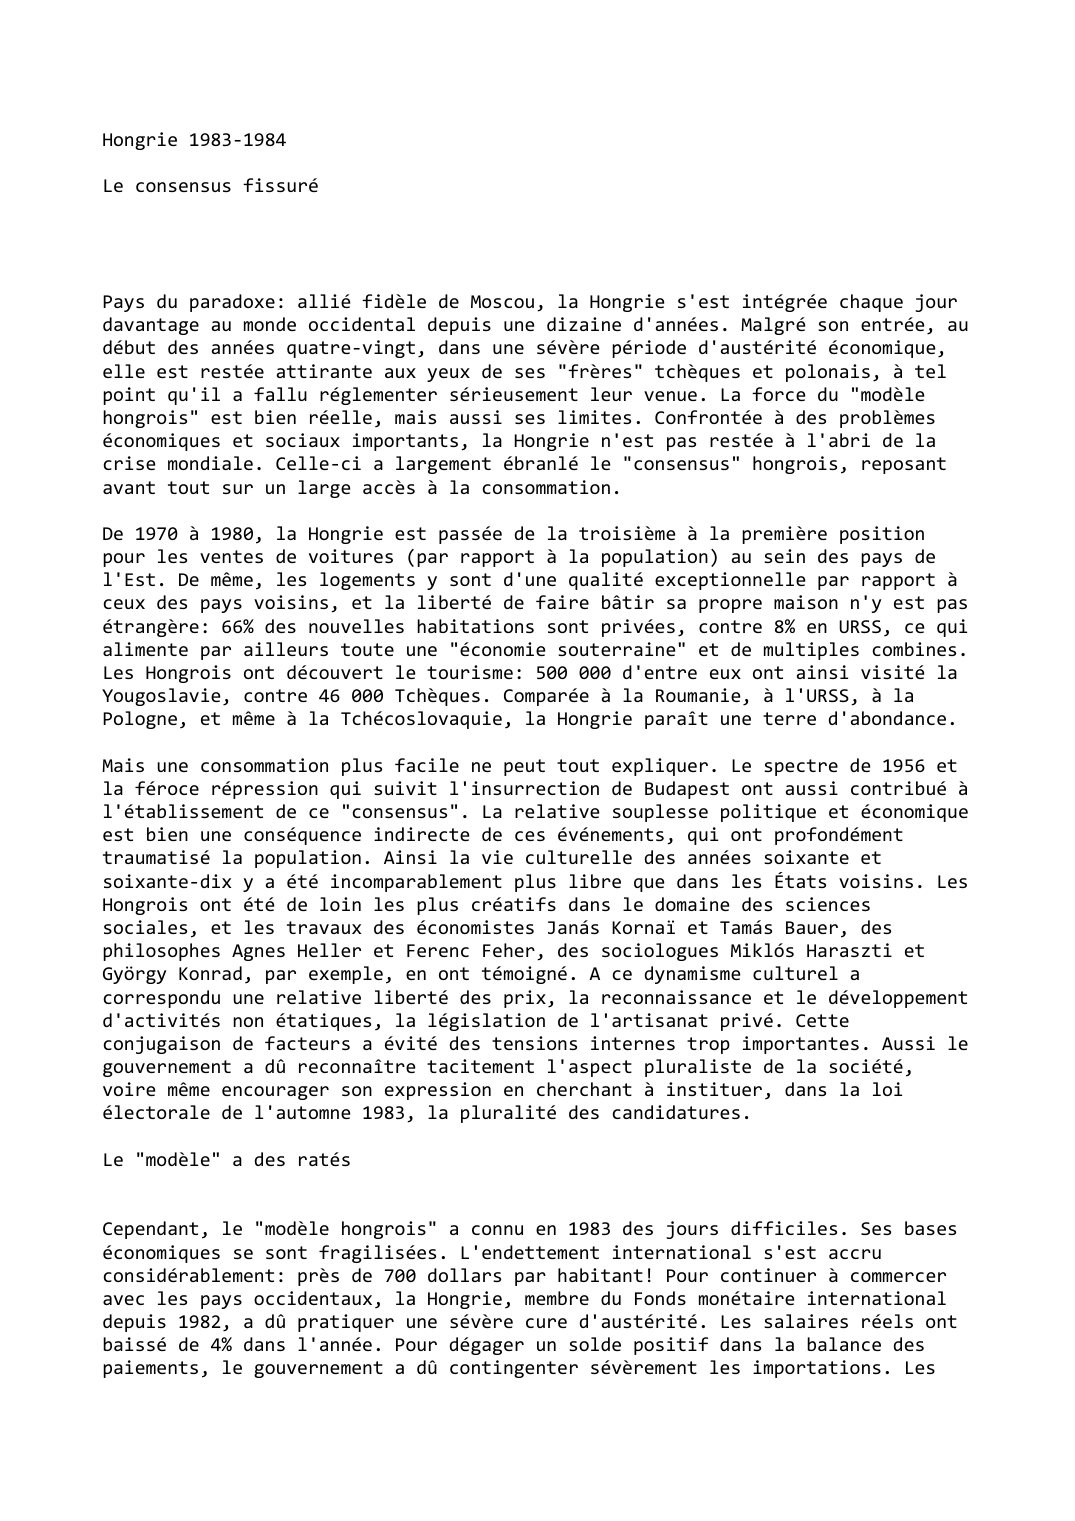 Prévisualisation du document Hongrie (1983-1984)

Le consensus fissuré